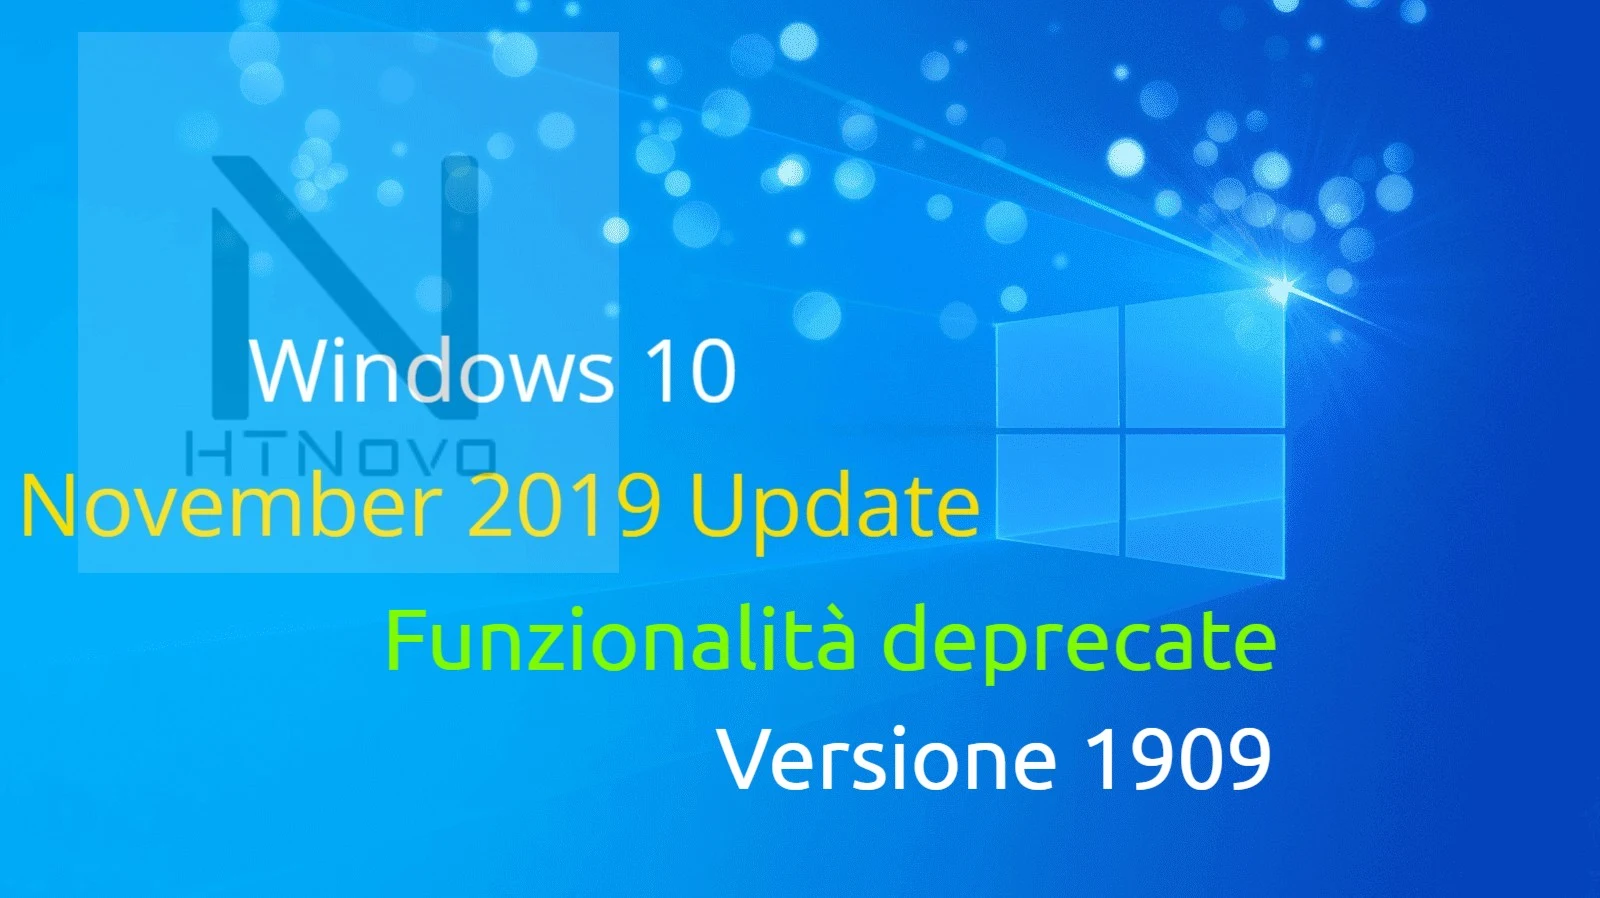 Funzionalità deprecate in Windows 10 Versione 1909